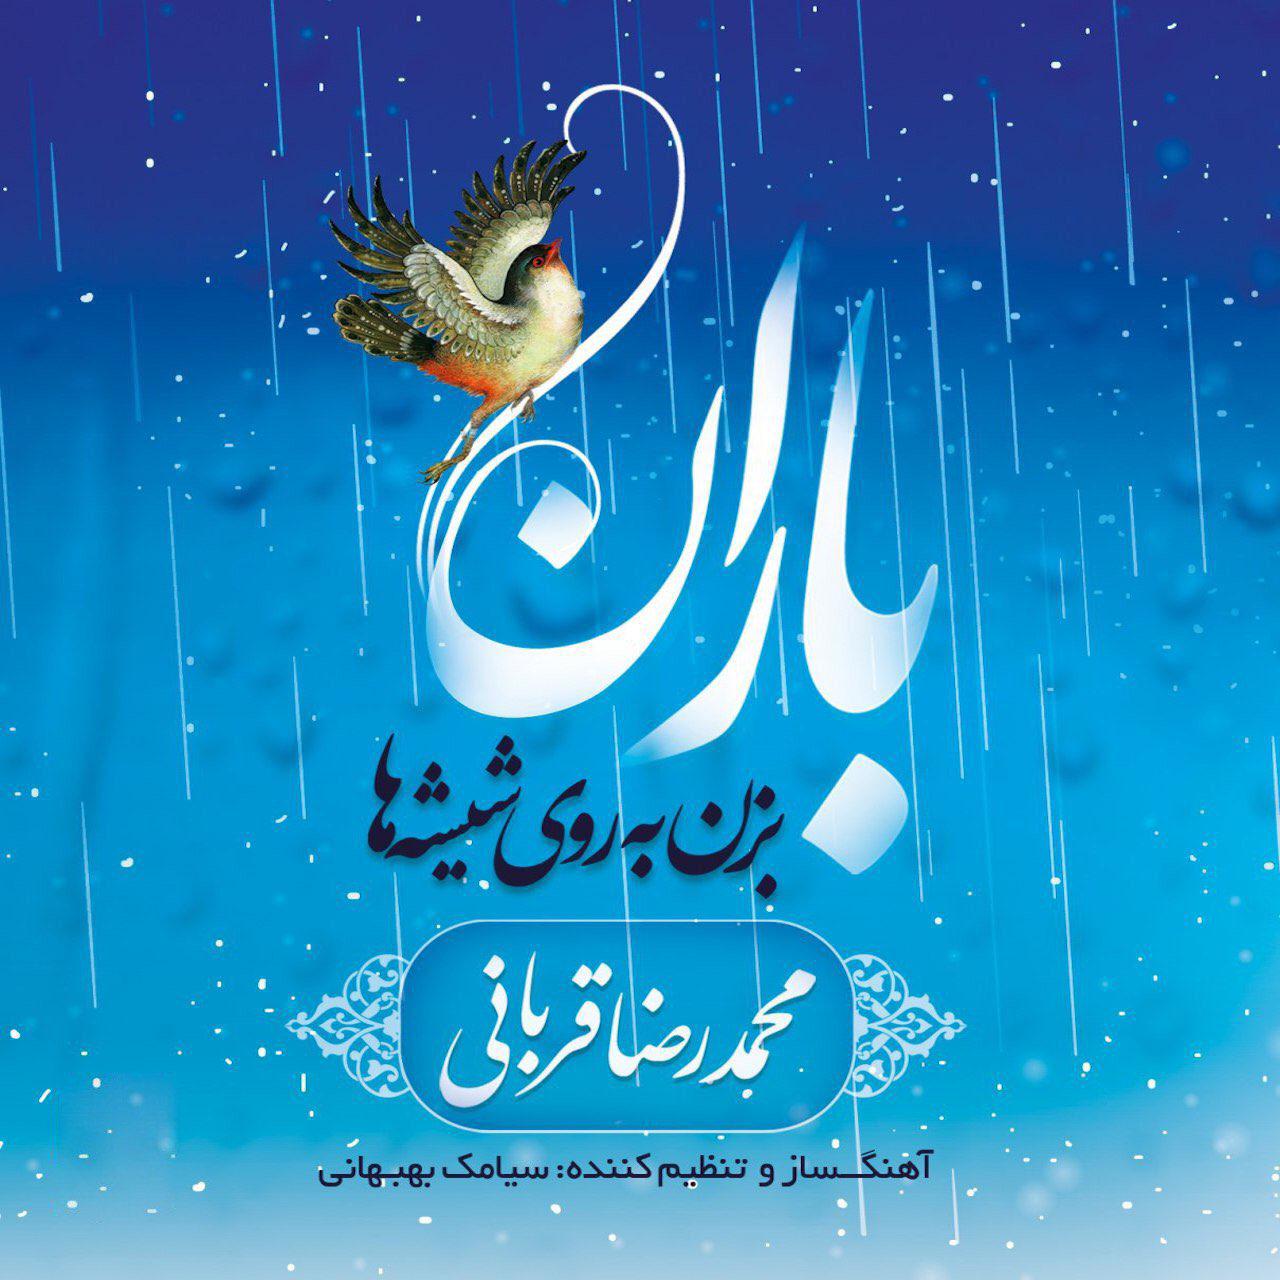 آلبوم باران بزن به روی شیشه ها با صدای محمدرضا قربانی